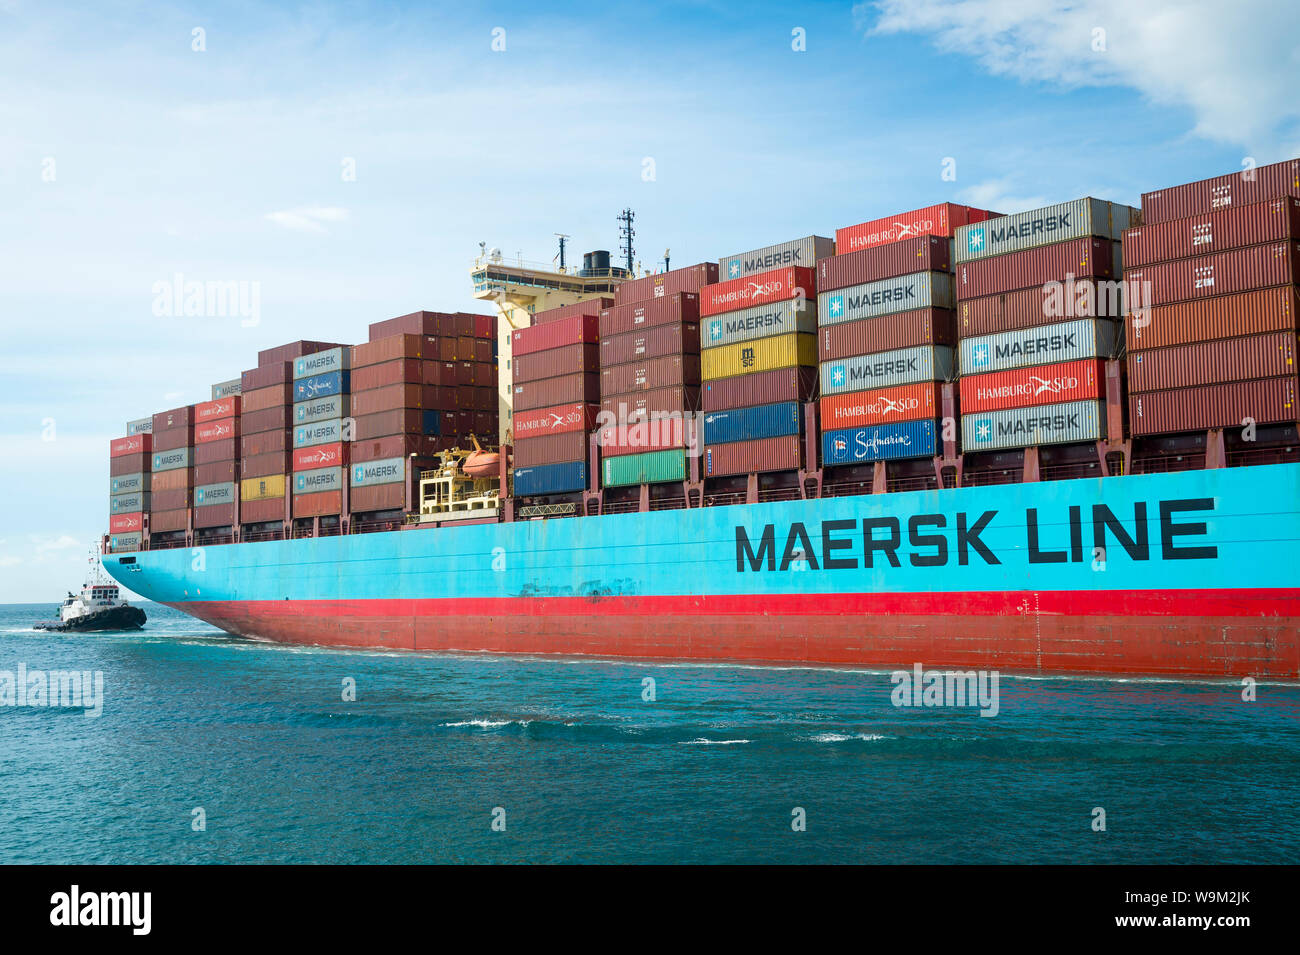 MIAMI - August 12, 2019: Ein Maersk Container schiff fährt durch die Regierung, wie es kommt an PortMiami, einer der größten cargo Häfen in den USA. Stockfoto